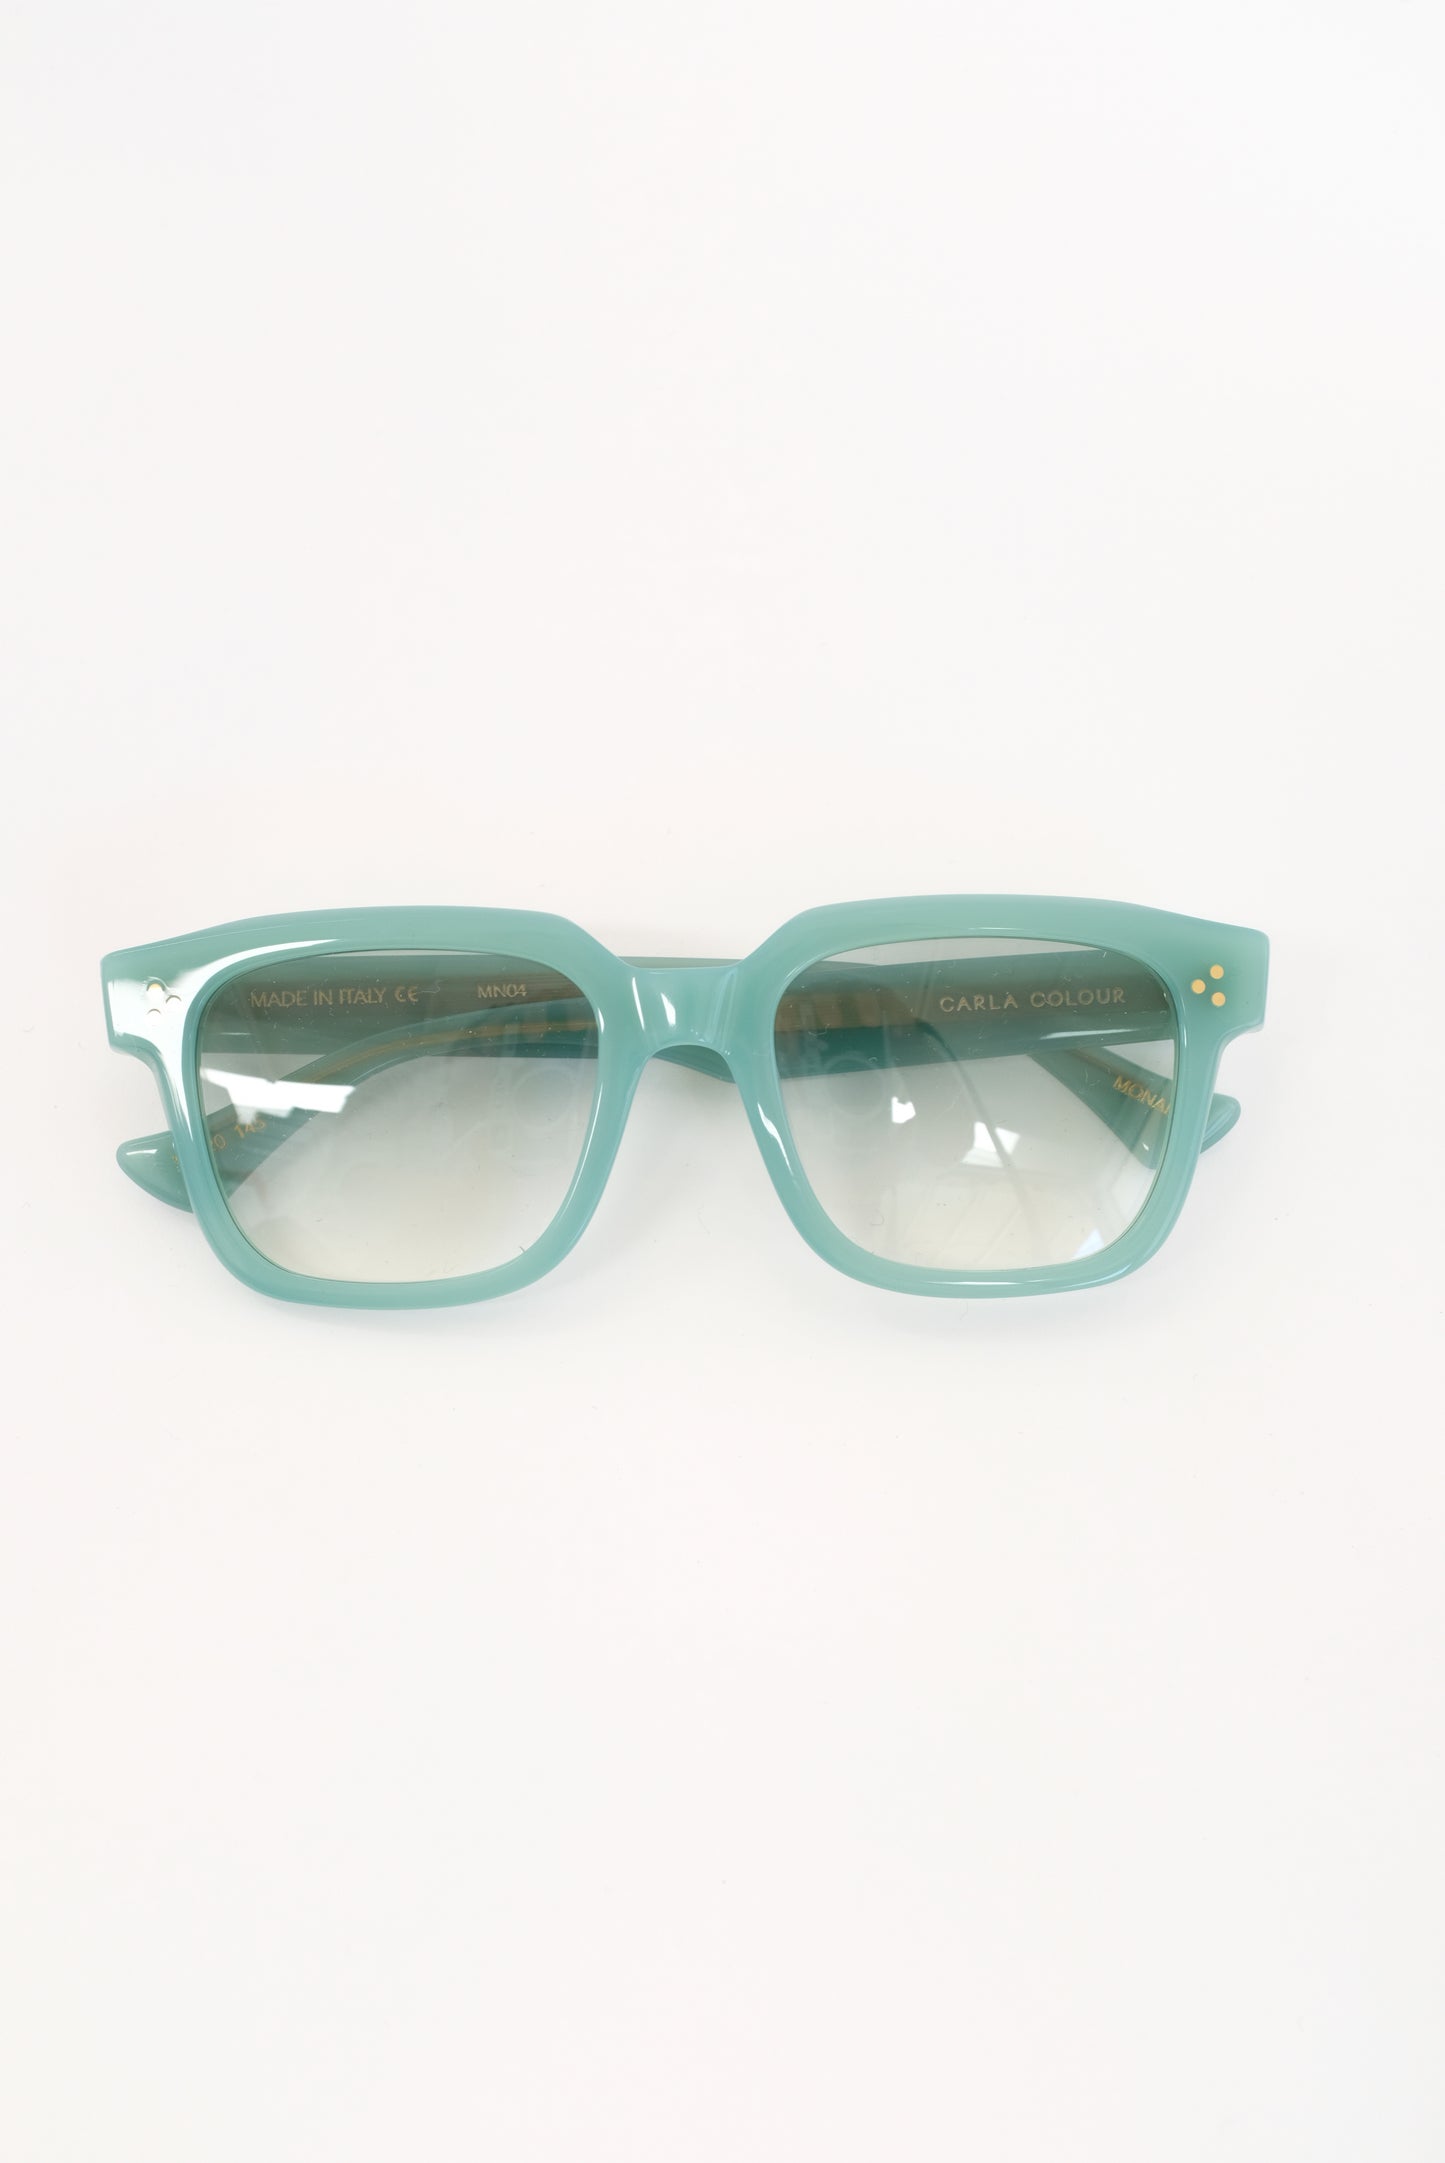 Carla Colour Monaro Sunglasses Seafoam Green